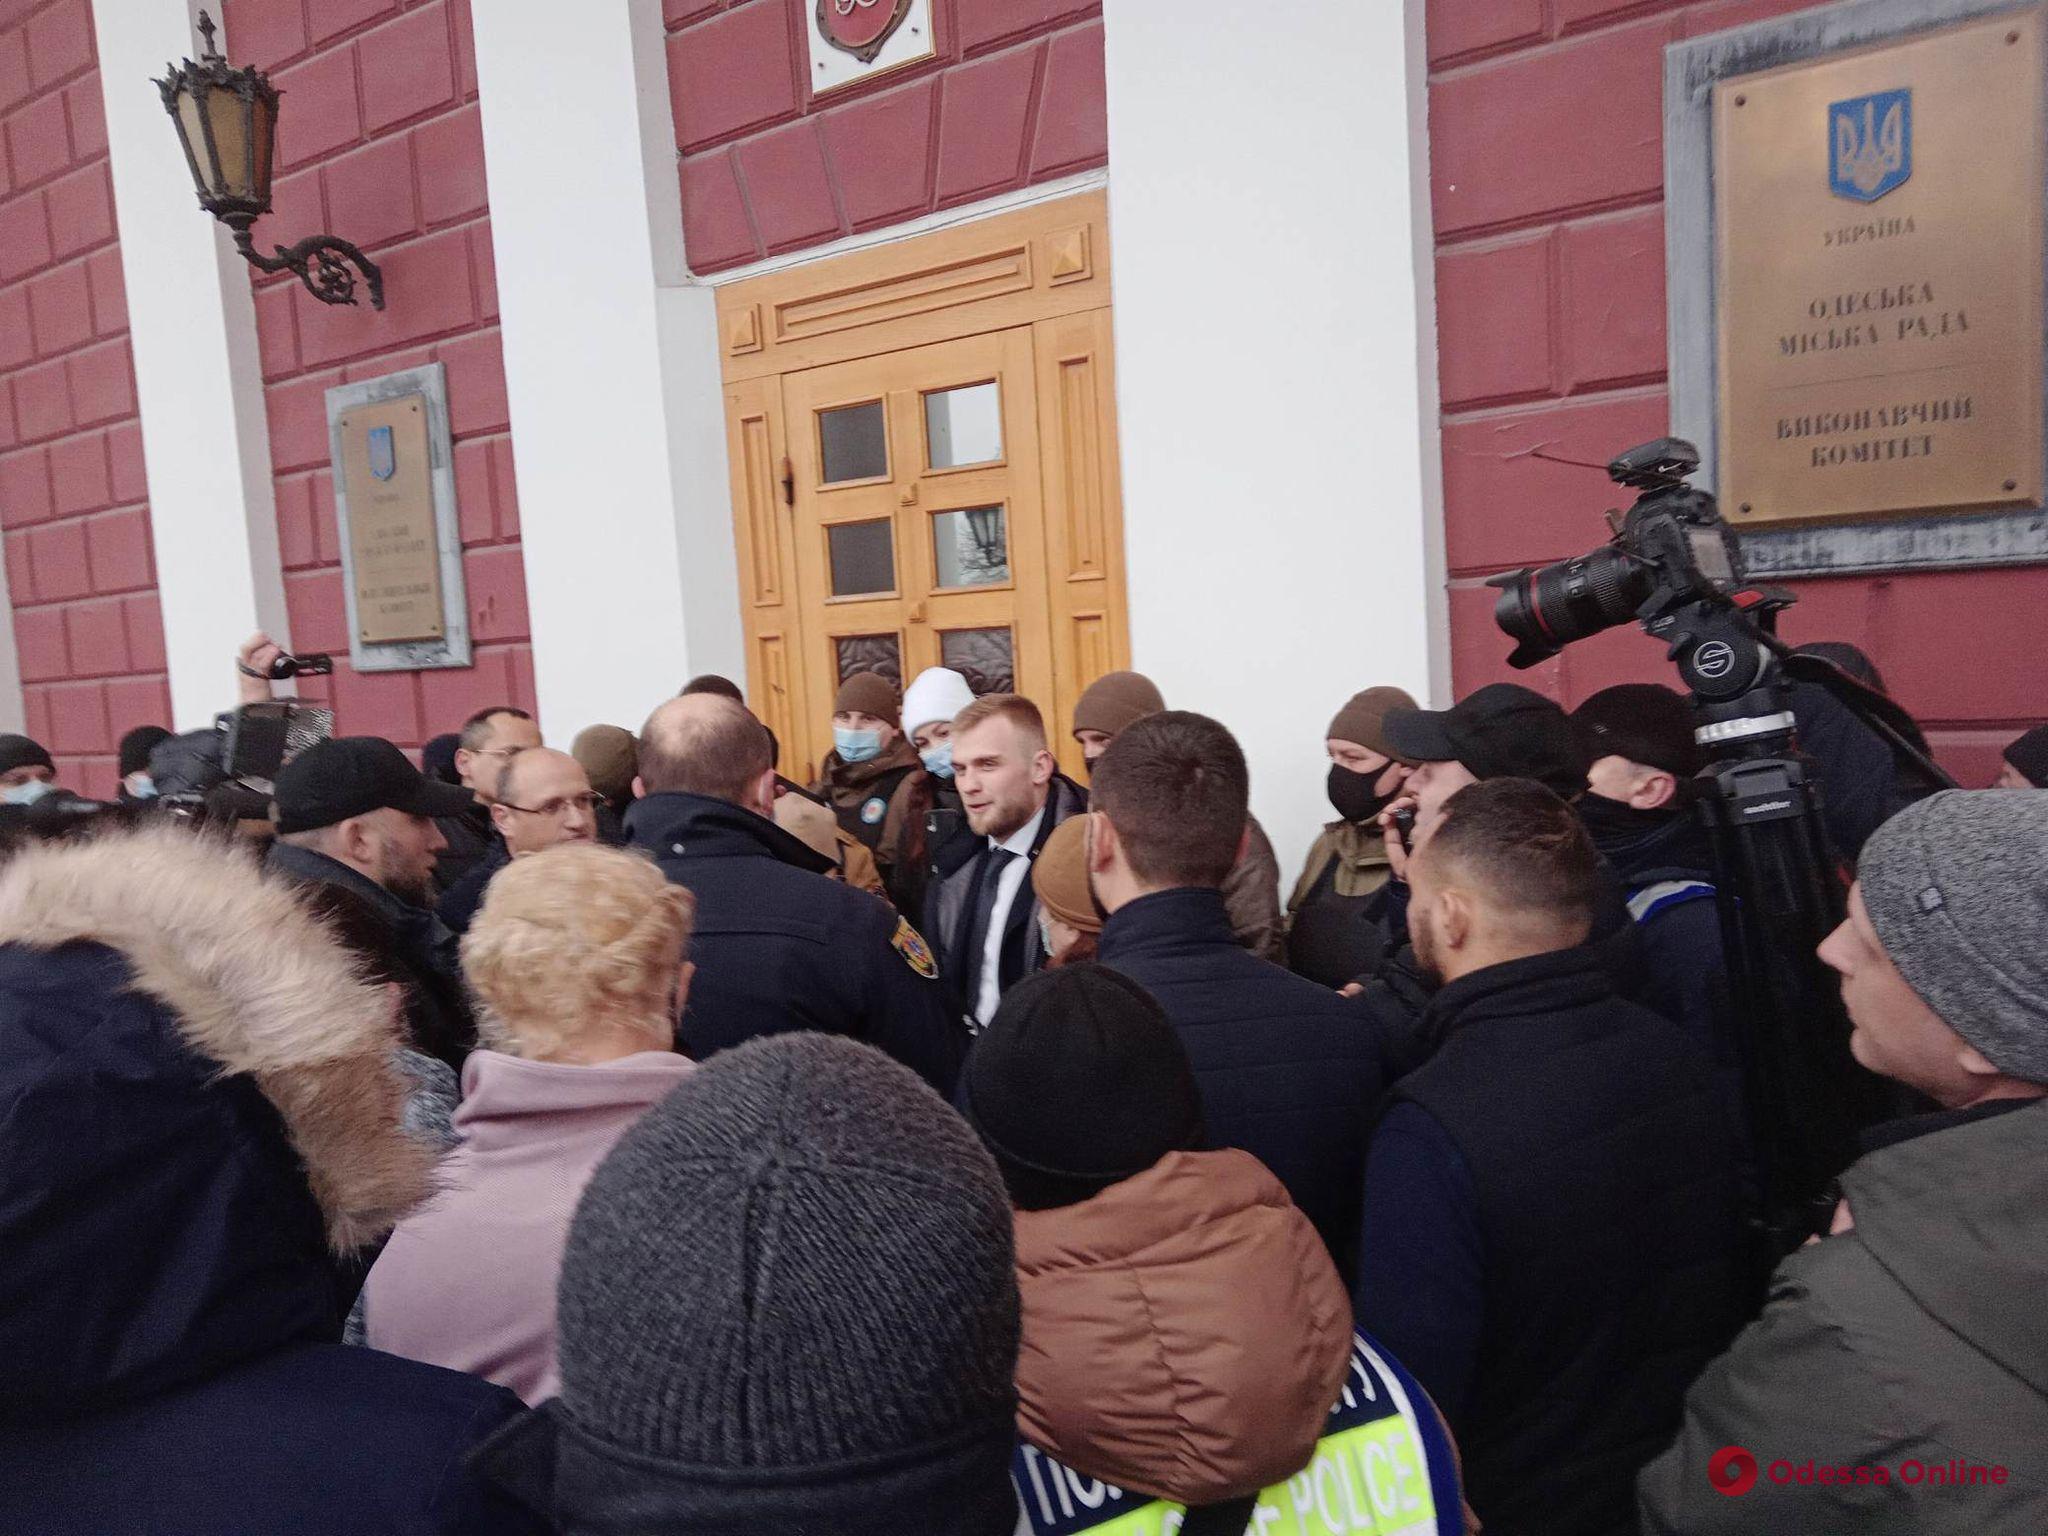 Нардеп Дмитрук снова явился на заседание земельной комиссии Одесского горсовета (обновляется)